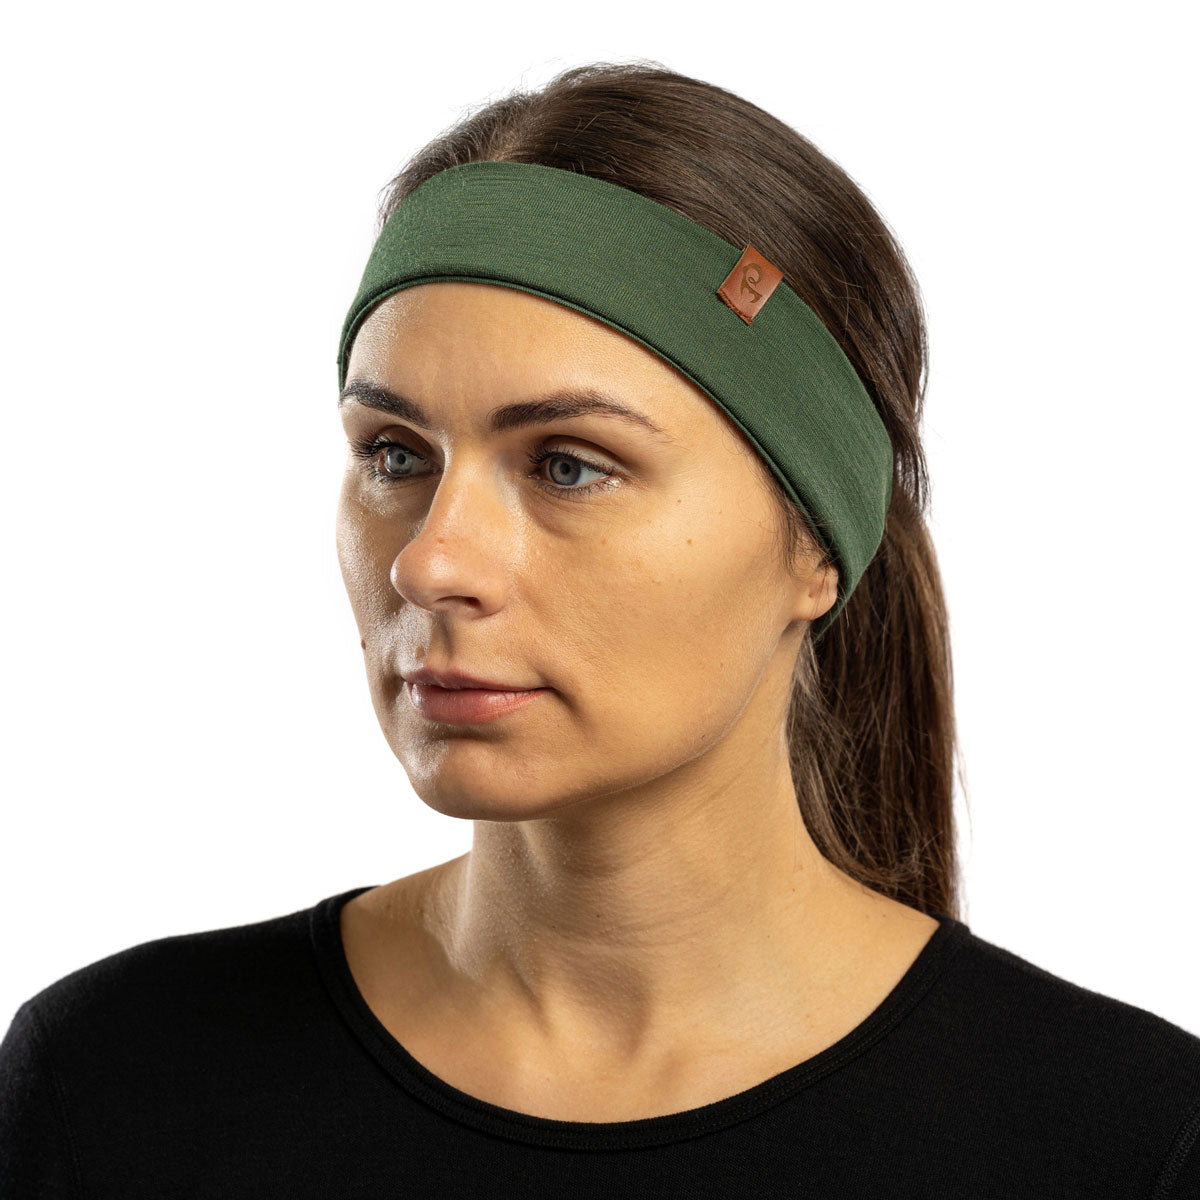 Merino Wool Headbands for Women Men Soft Hair Band Workout Sweatbands  Summer Outdoor Accessories Dark Green 